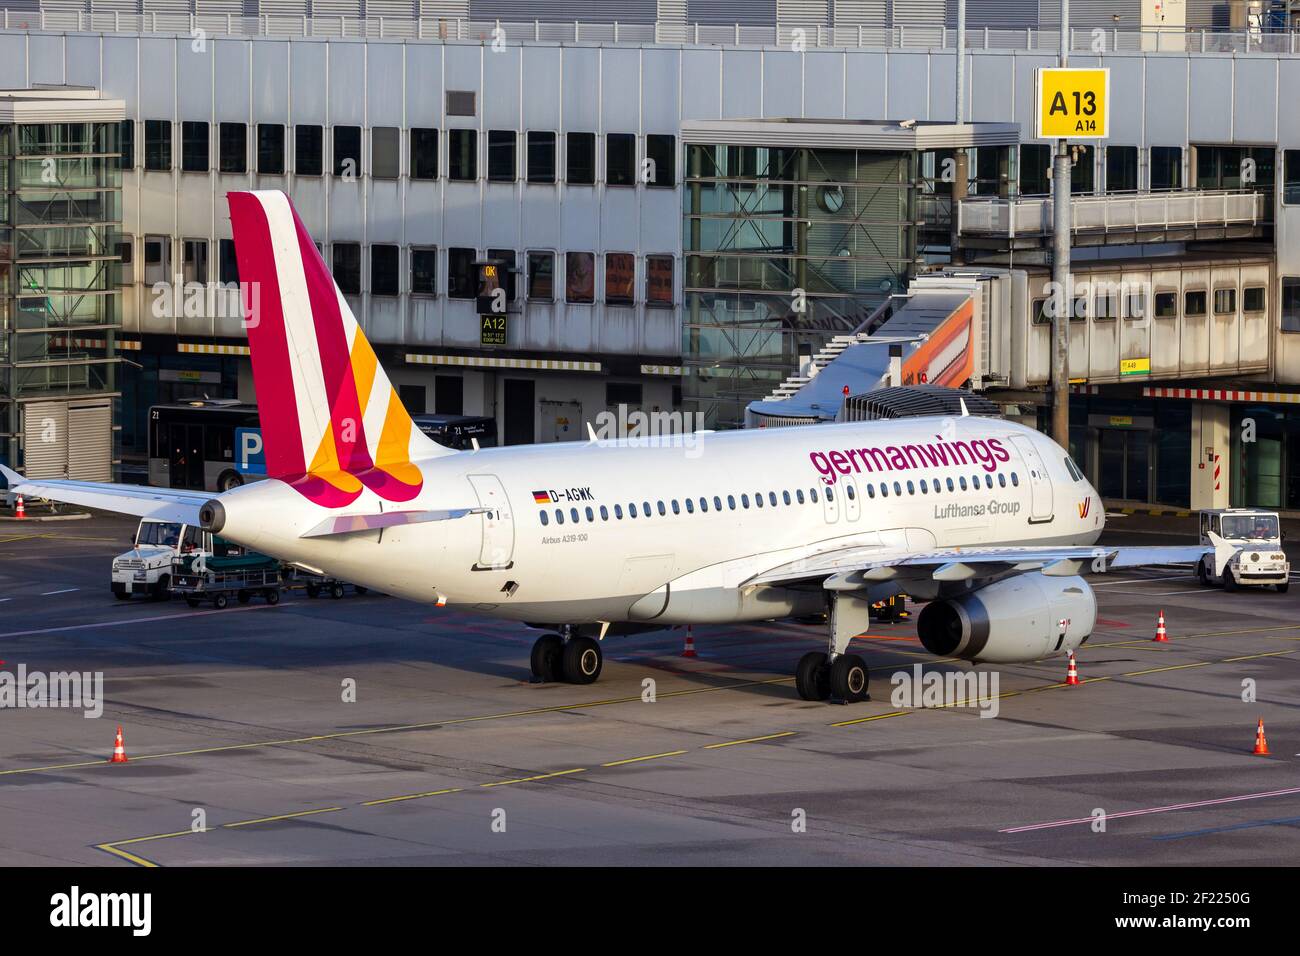 Germanwings Airbus A319-100 à l'aéroport de Düsseldorf. Allemagne - 17 décembre 2015 Banque D'Images